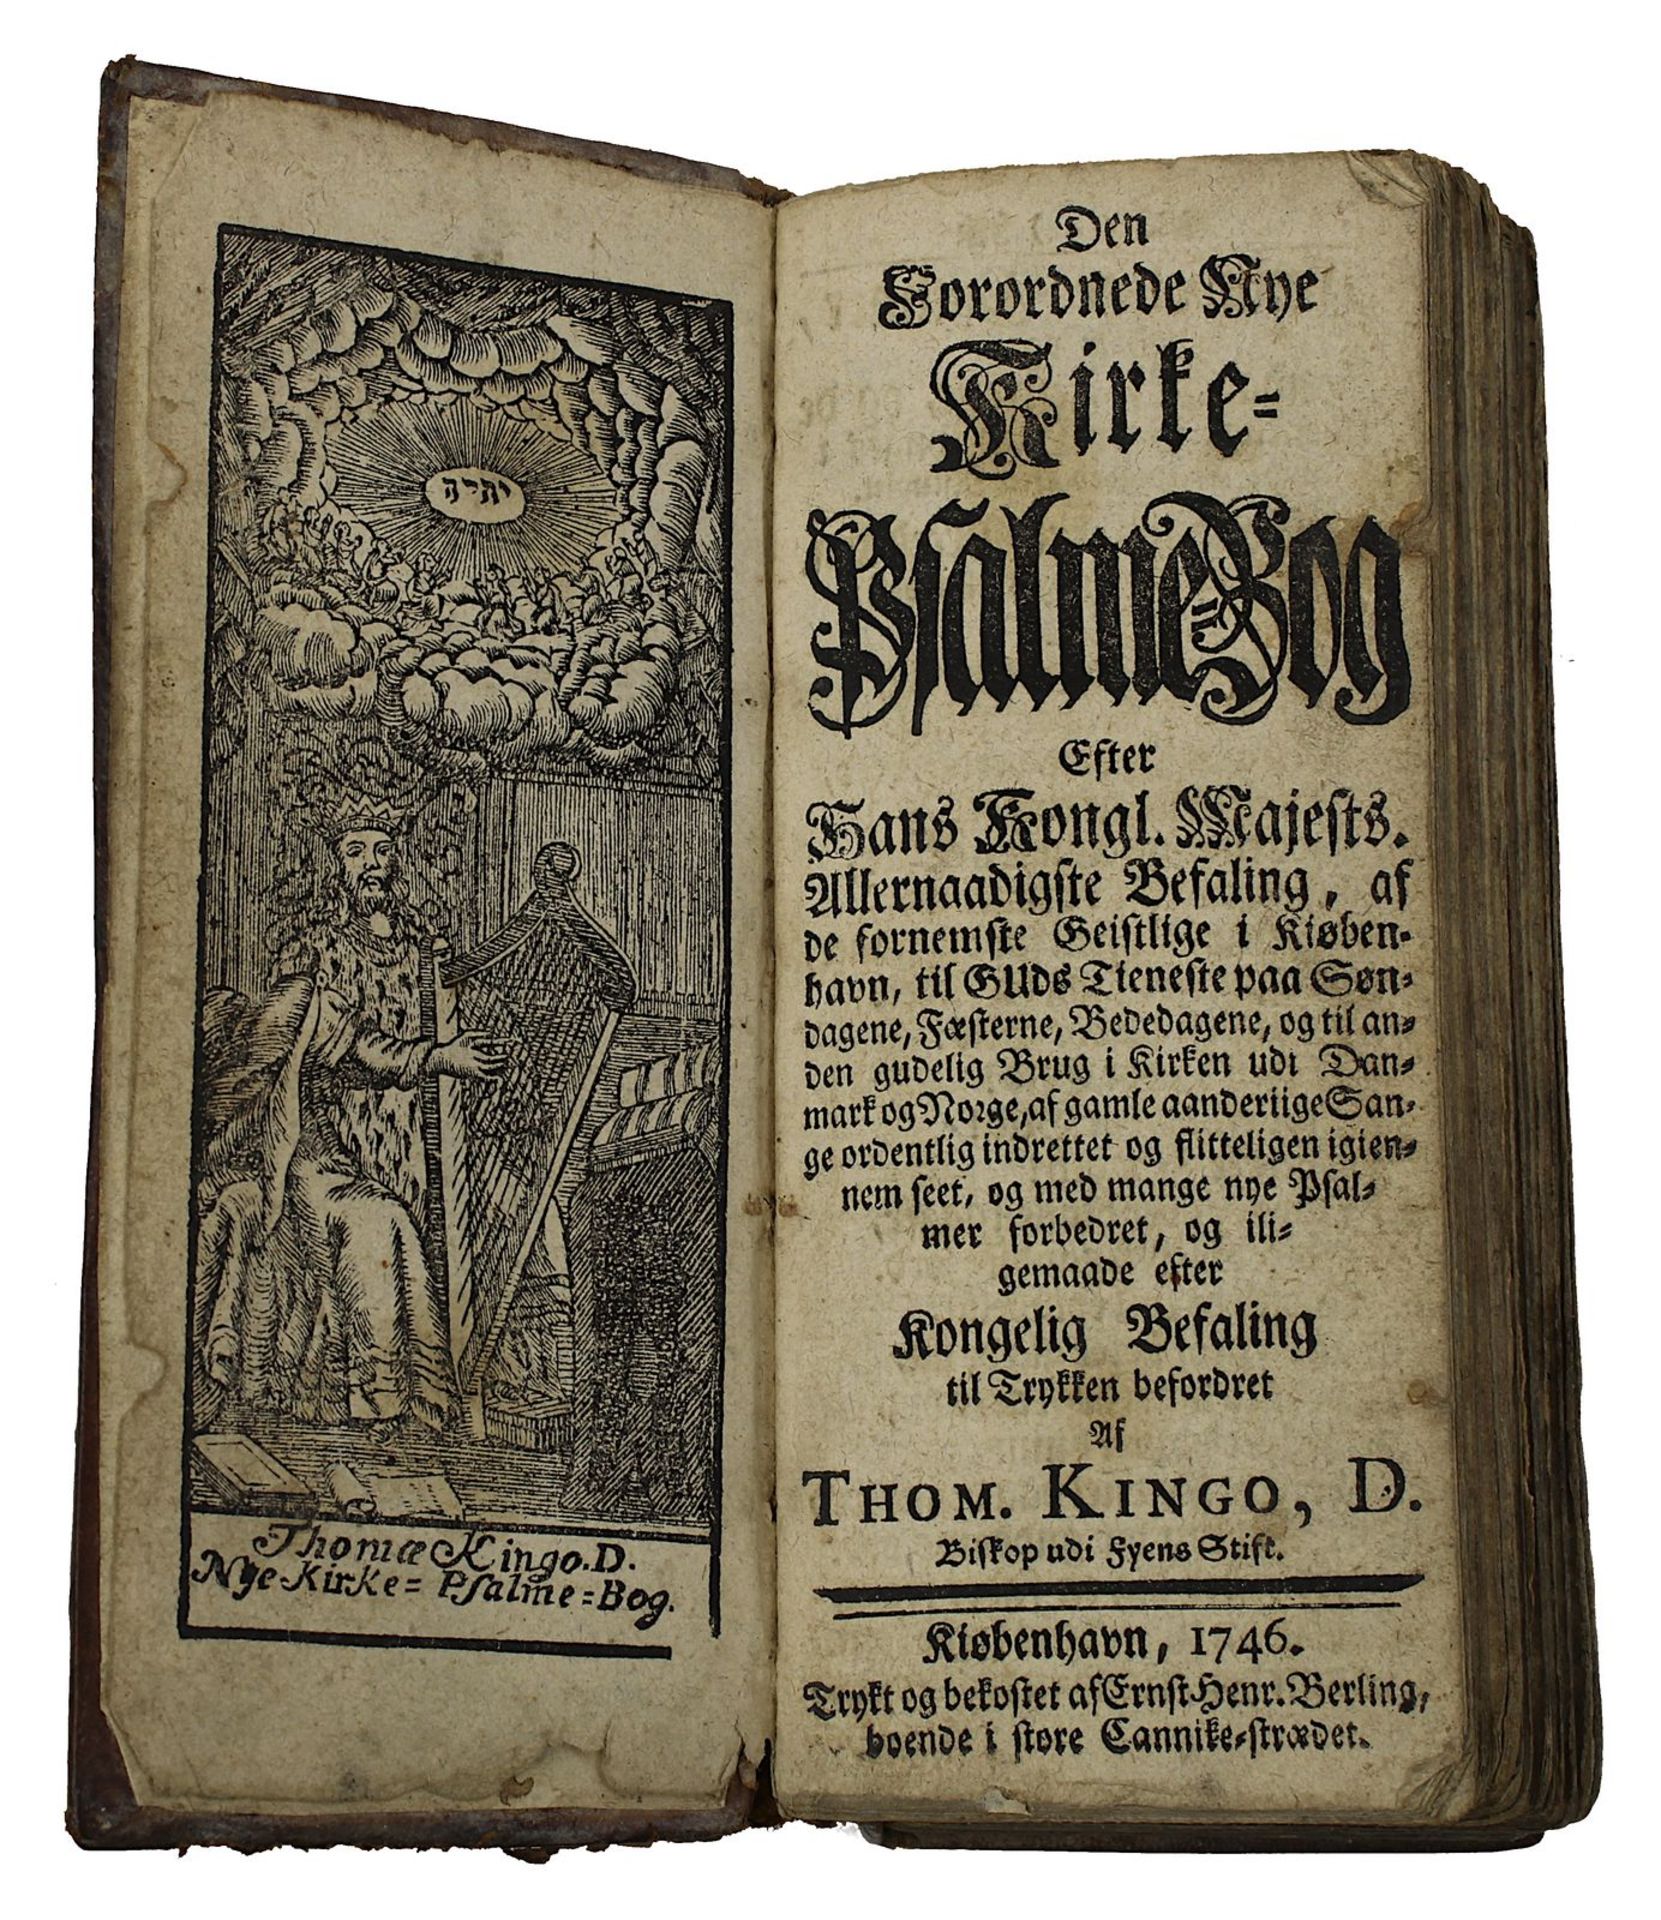 Thomas Kingo "Den forordnede Nye Kirke-Psalme-Bog", Kopenhagen 1746, Frontispiz, Ledereinband mit